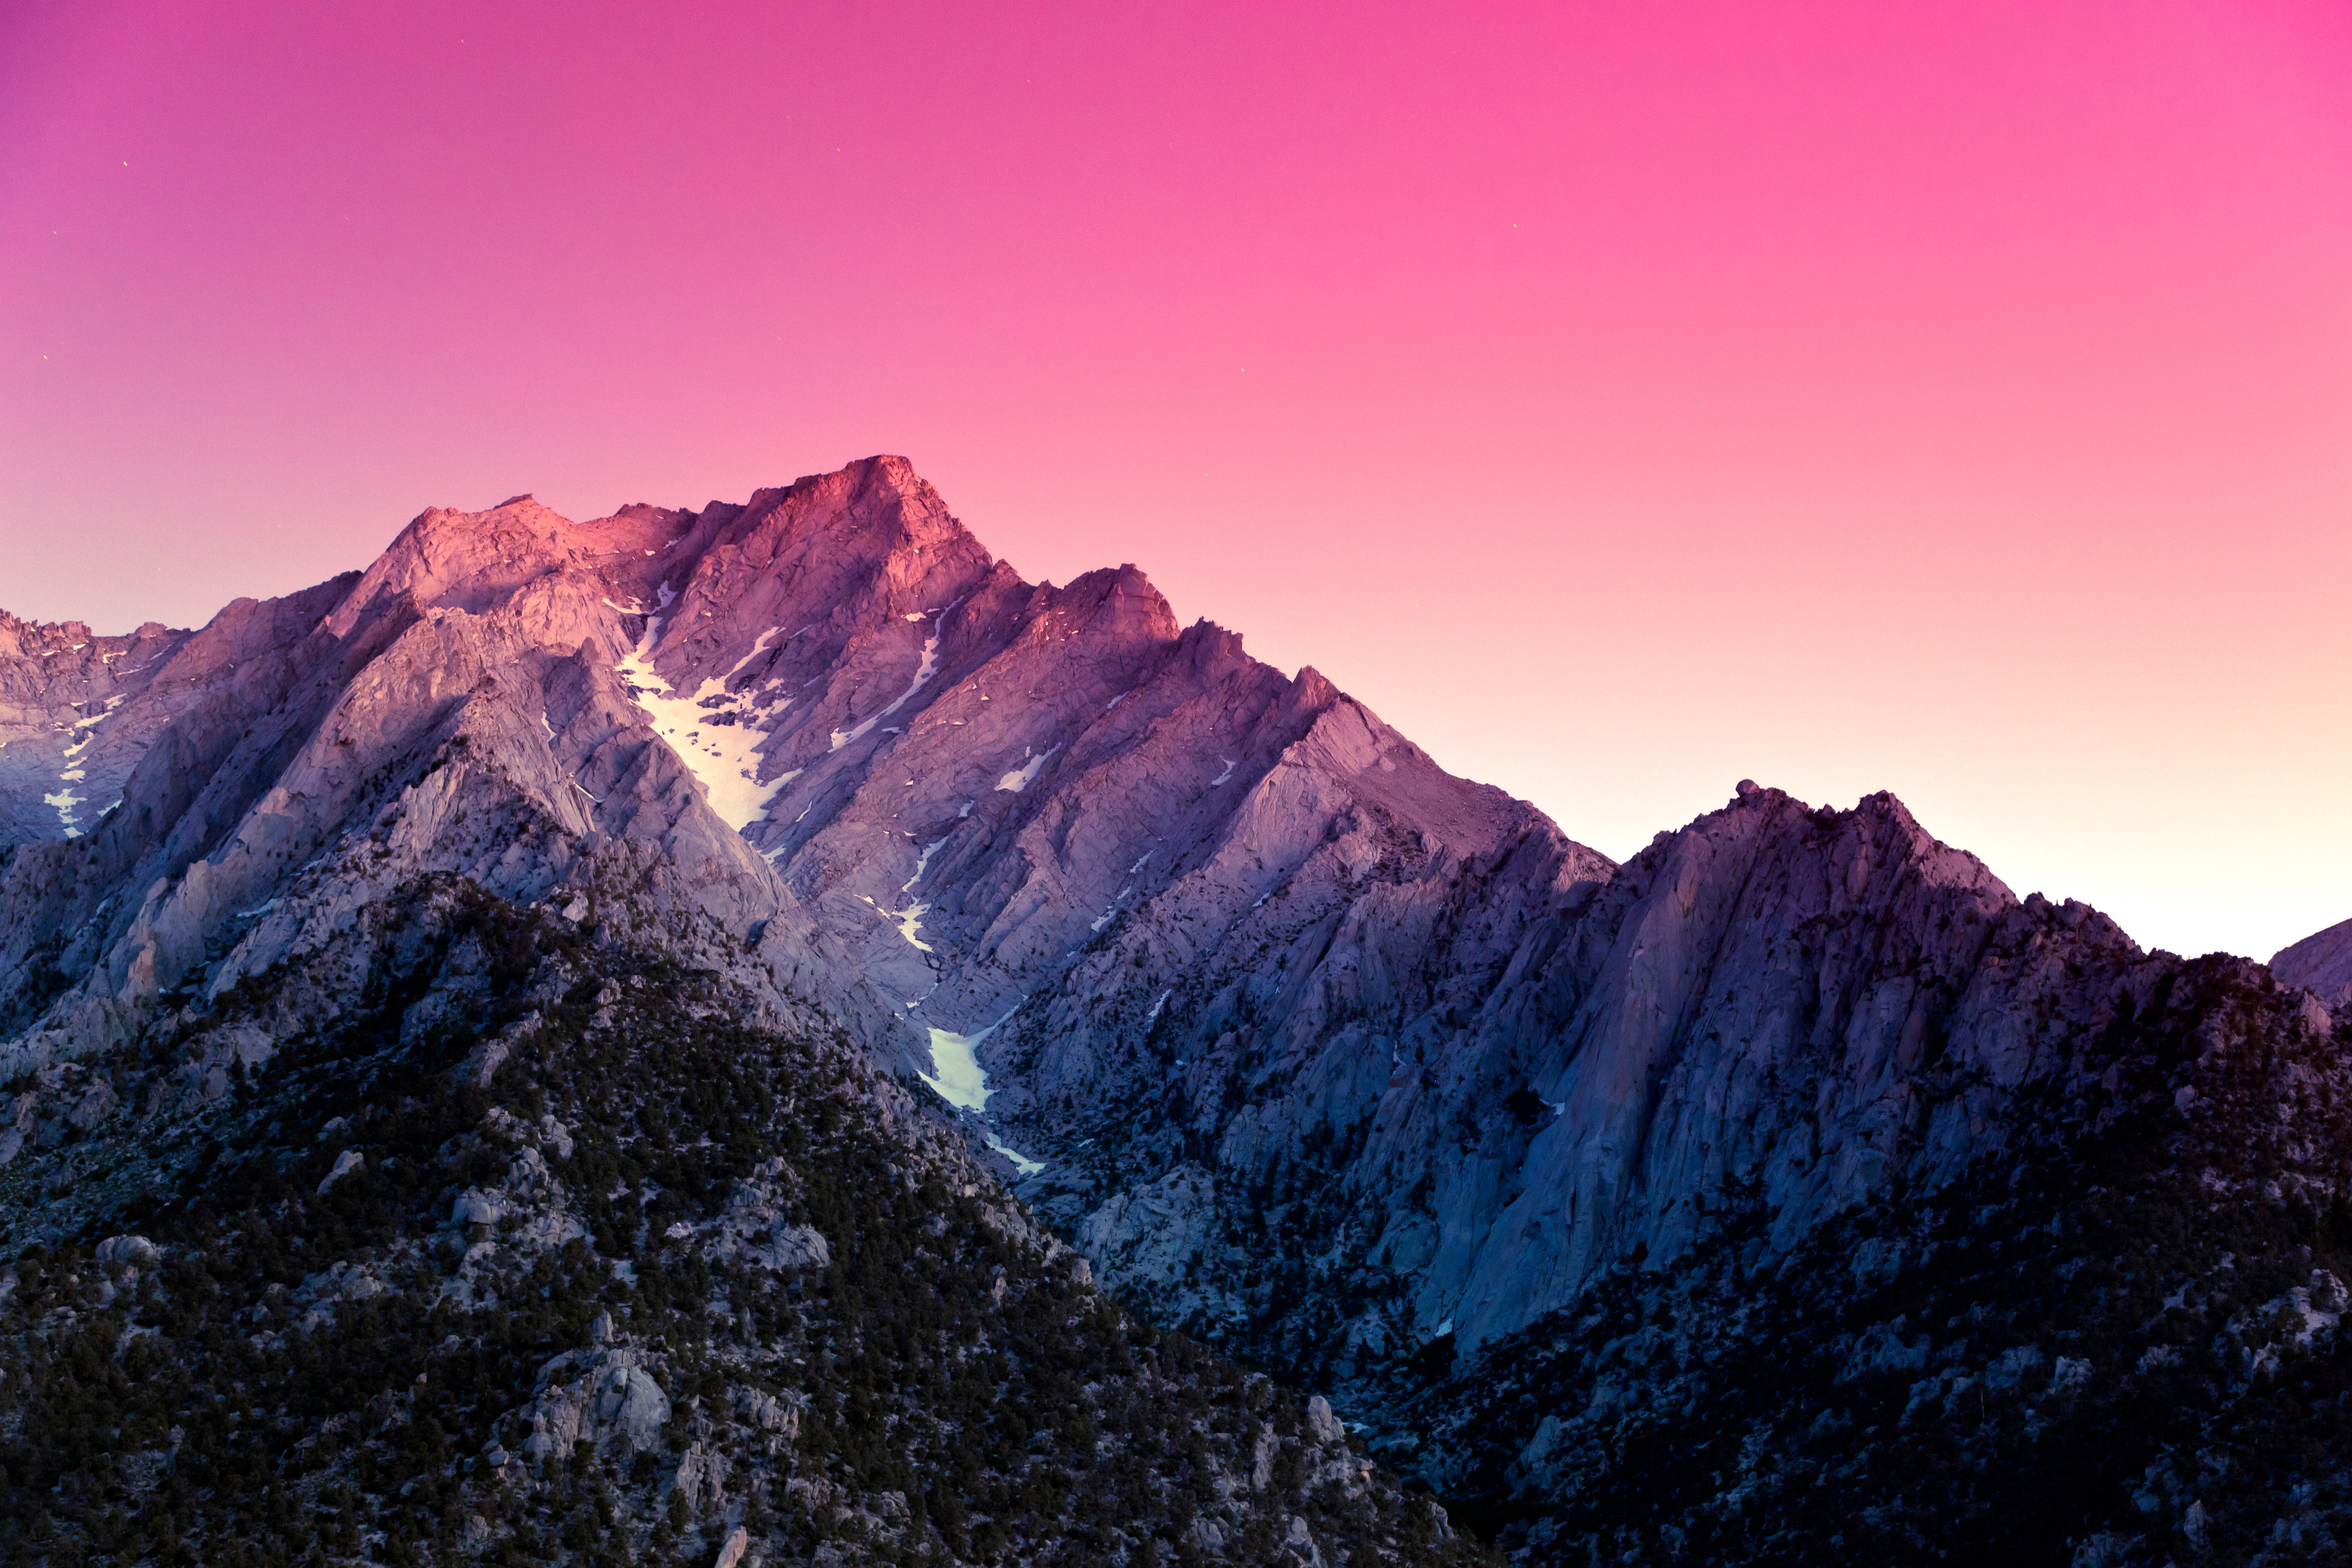 3840x2160. LG Nexus 5 16gb d821. Горы. Красивые горы. Розовые горы.